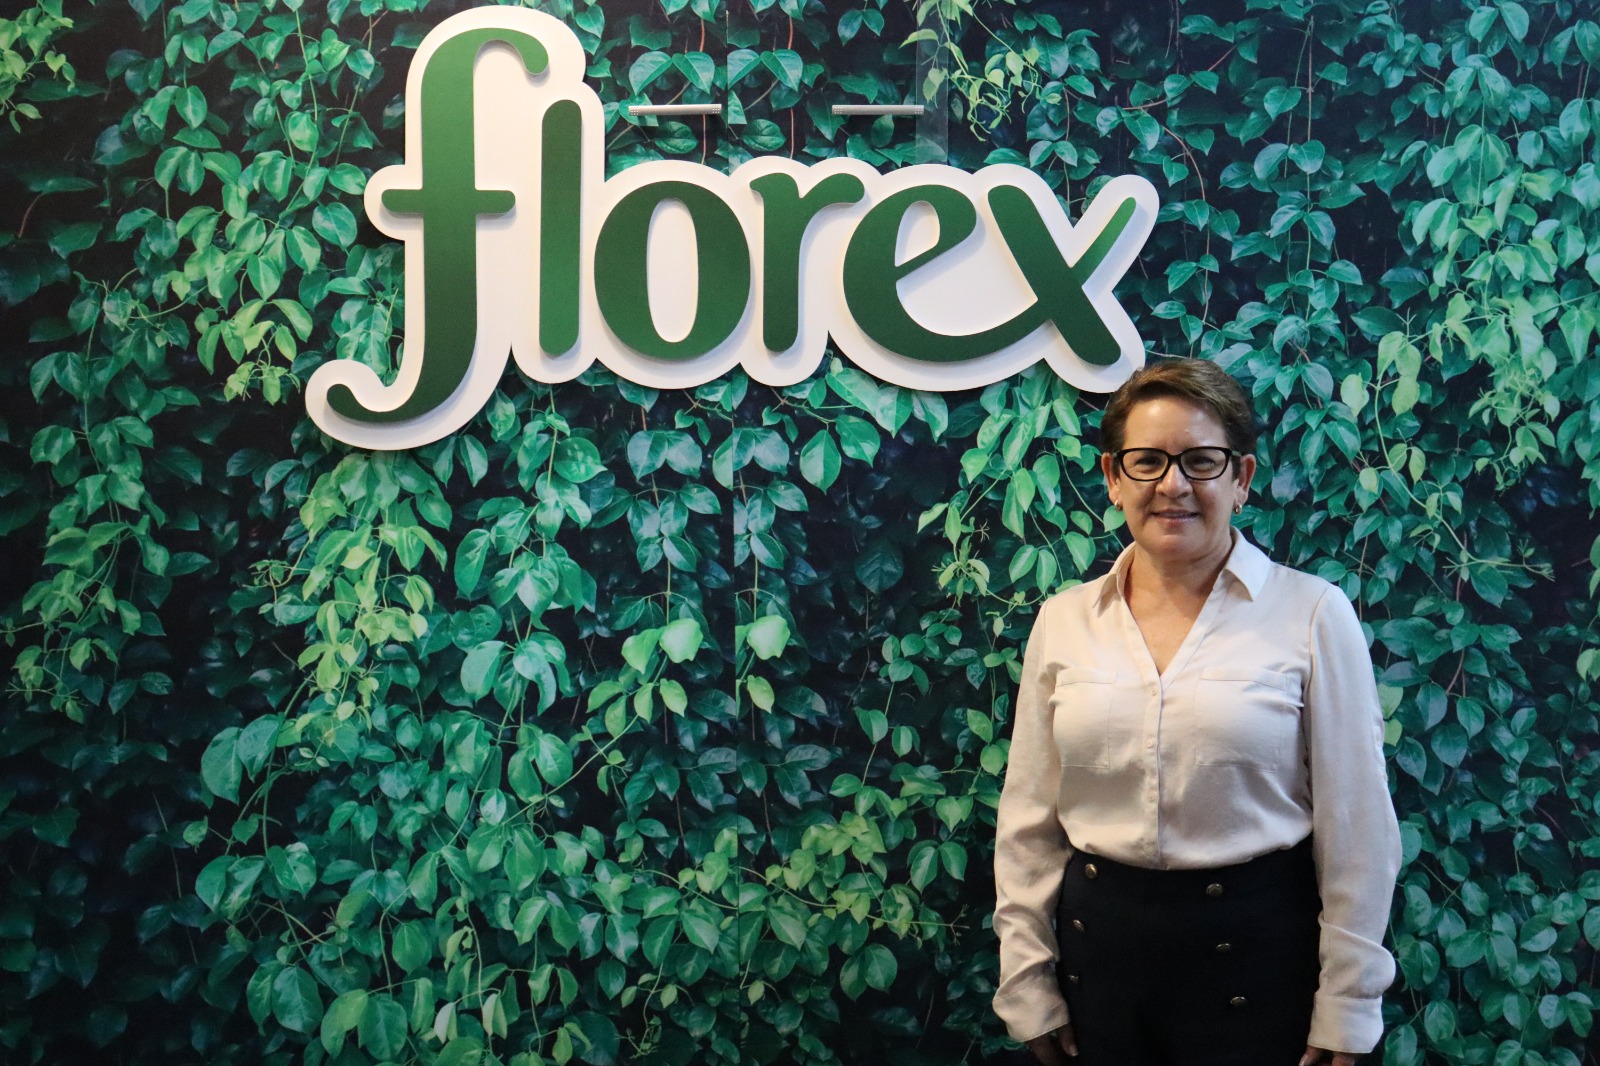 Florex fabricó más de 15.000 galones para sus productos de limpieza a partir de resina 100% reciclada